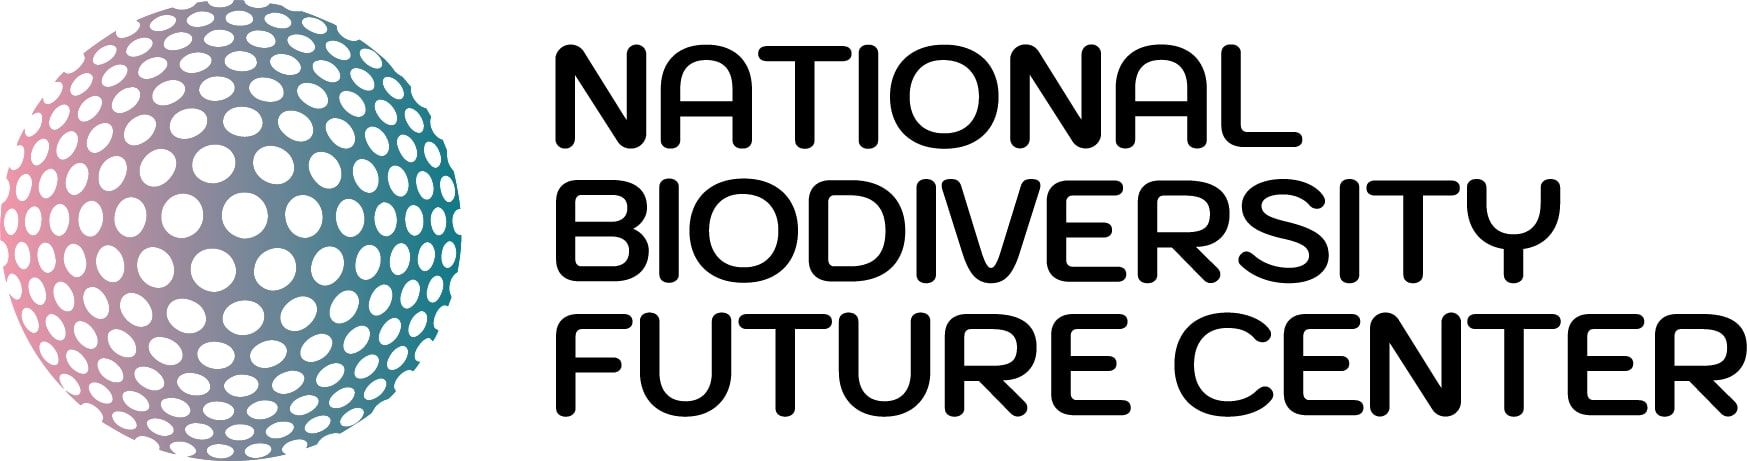 NBFC finanzia con 20 milioni di euro le piccole e medie imprese per progetti innovativi sulla biodiversità